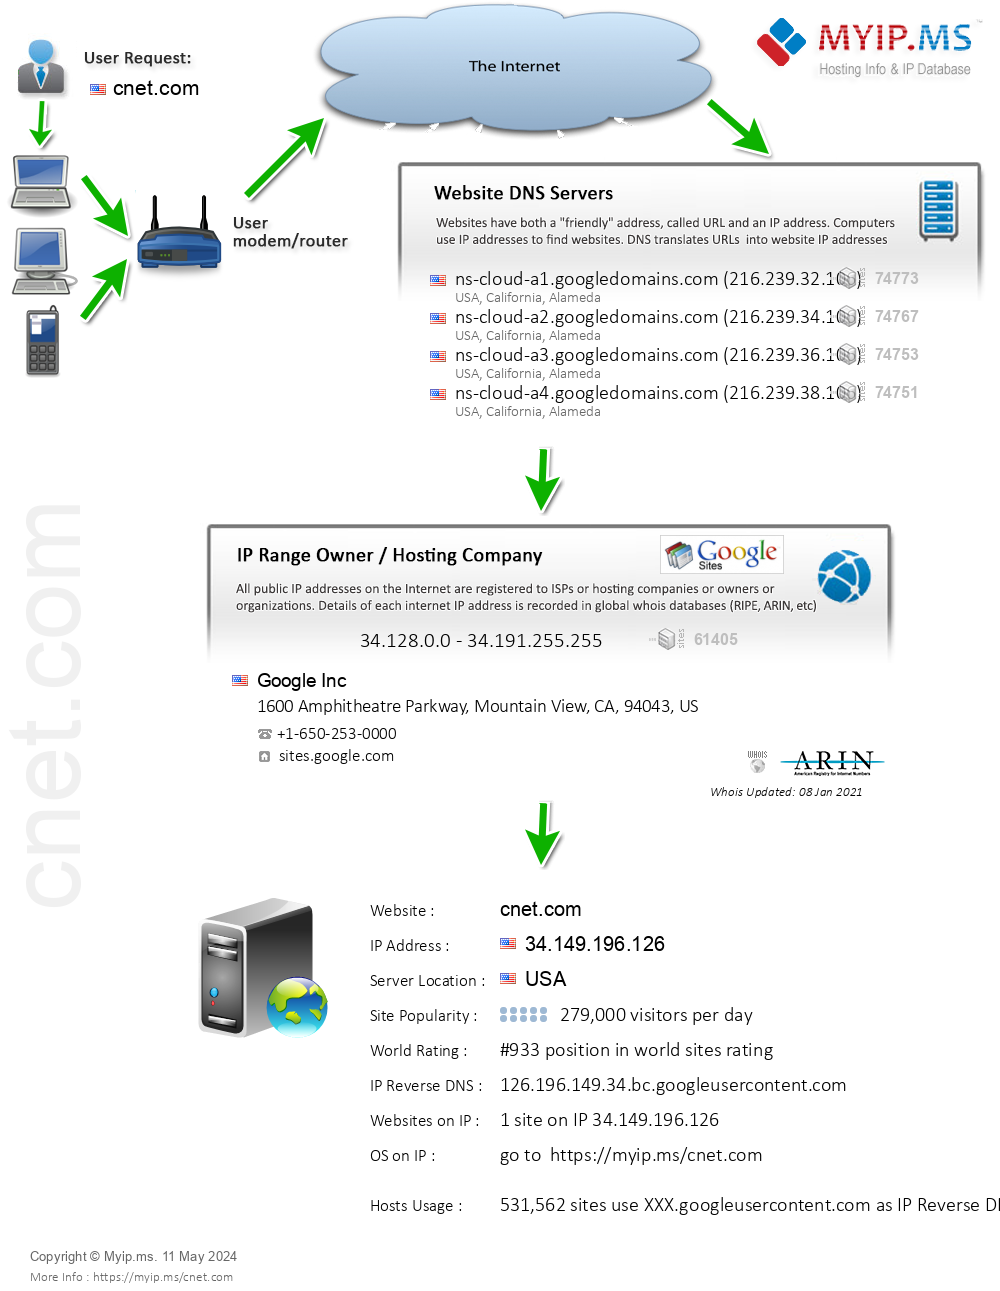 Cnet.com - Website Hosting Visual IP Diagram